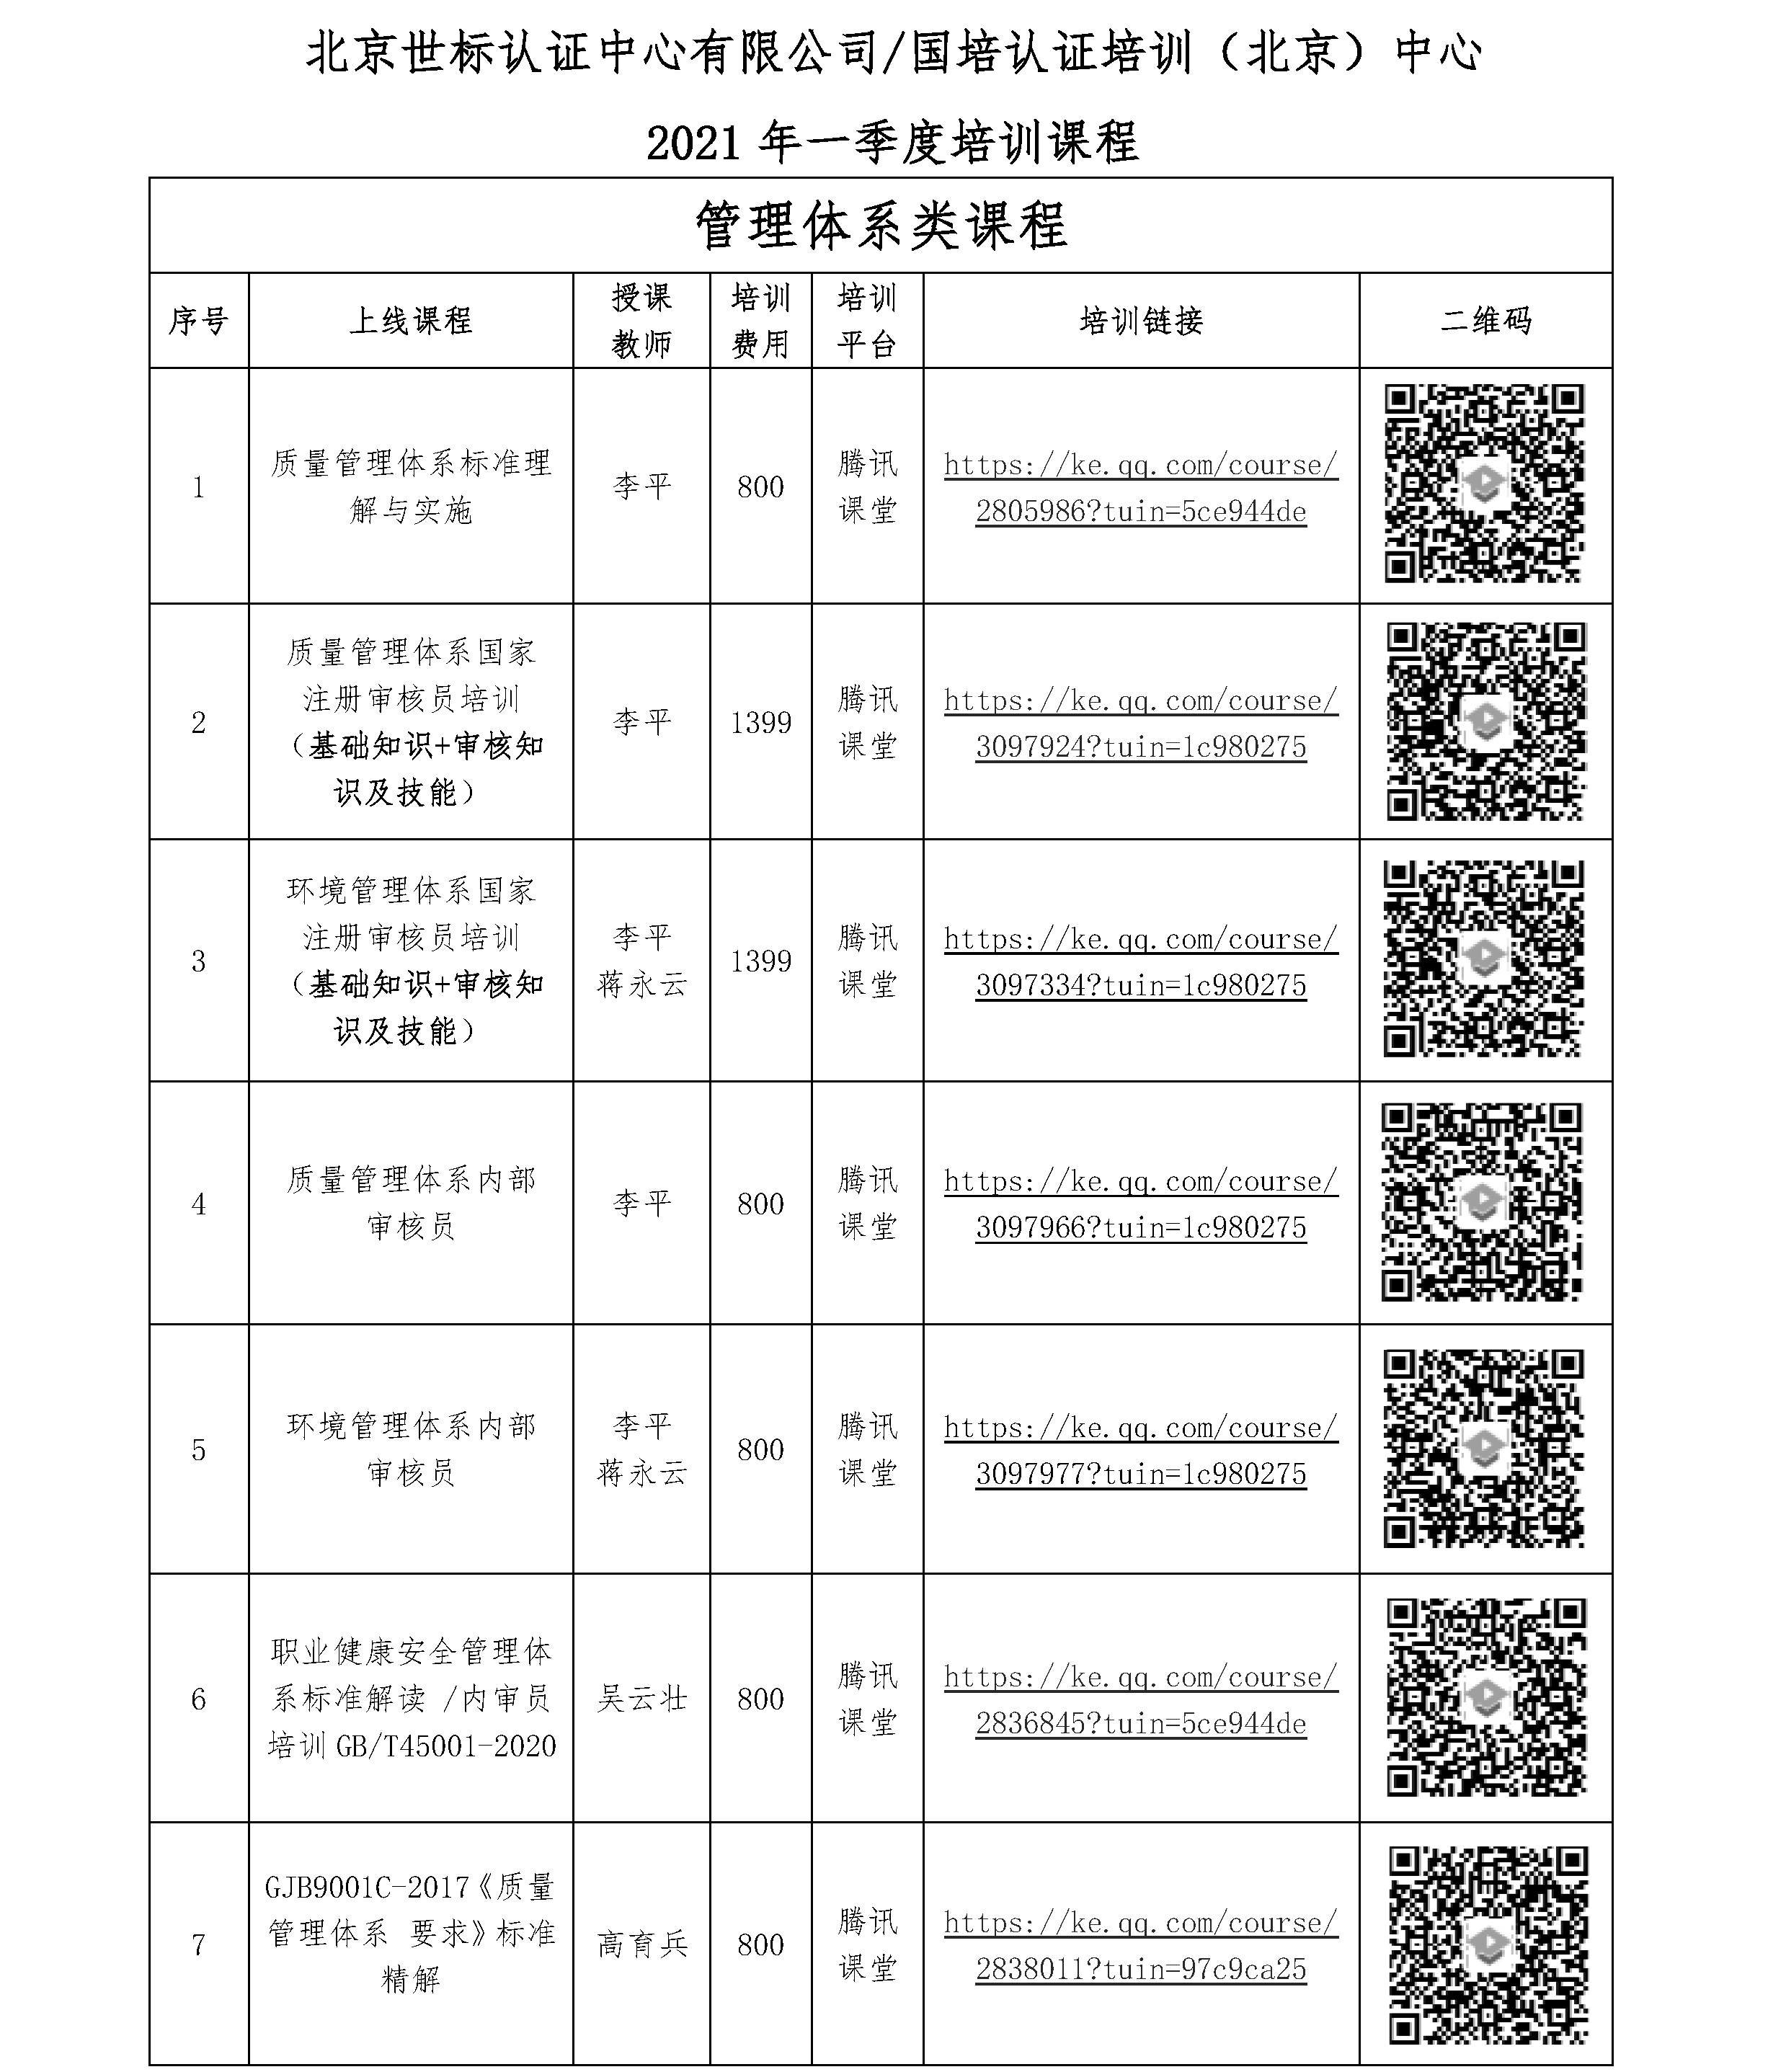 北京世标认证中心有限公司/国培认证培训（北京）中心 2021年一季度培训课程 (图1)